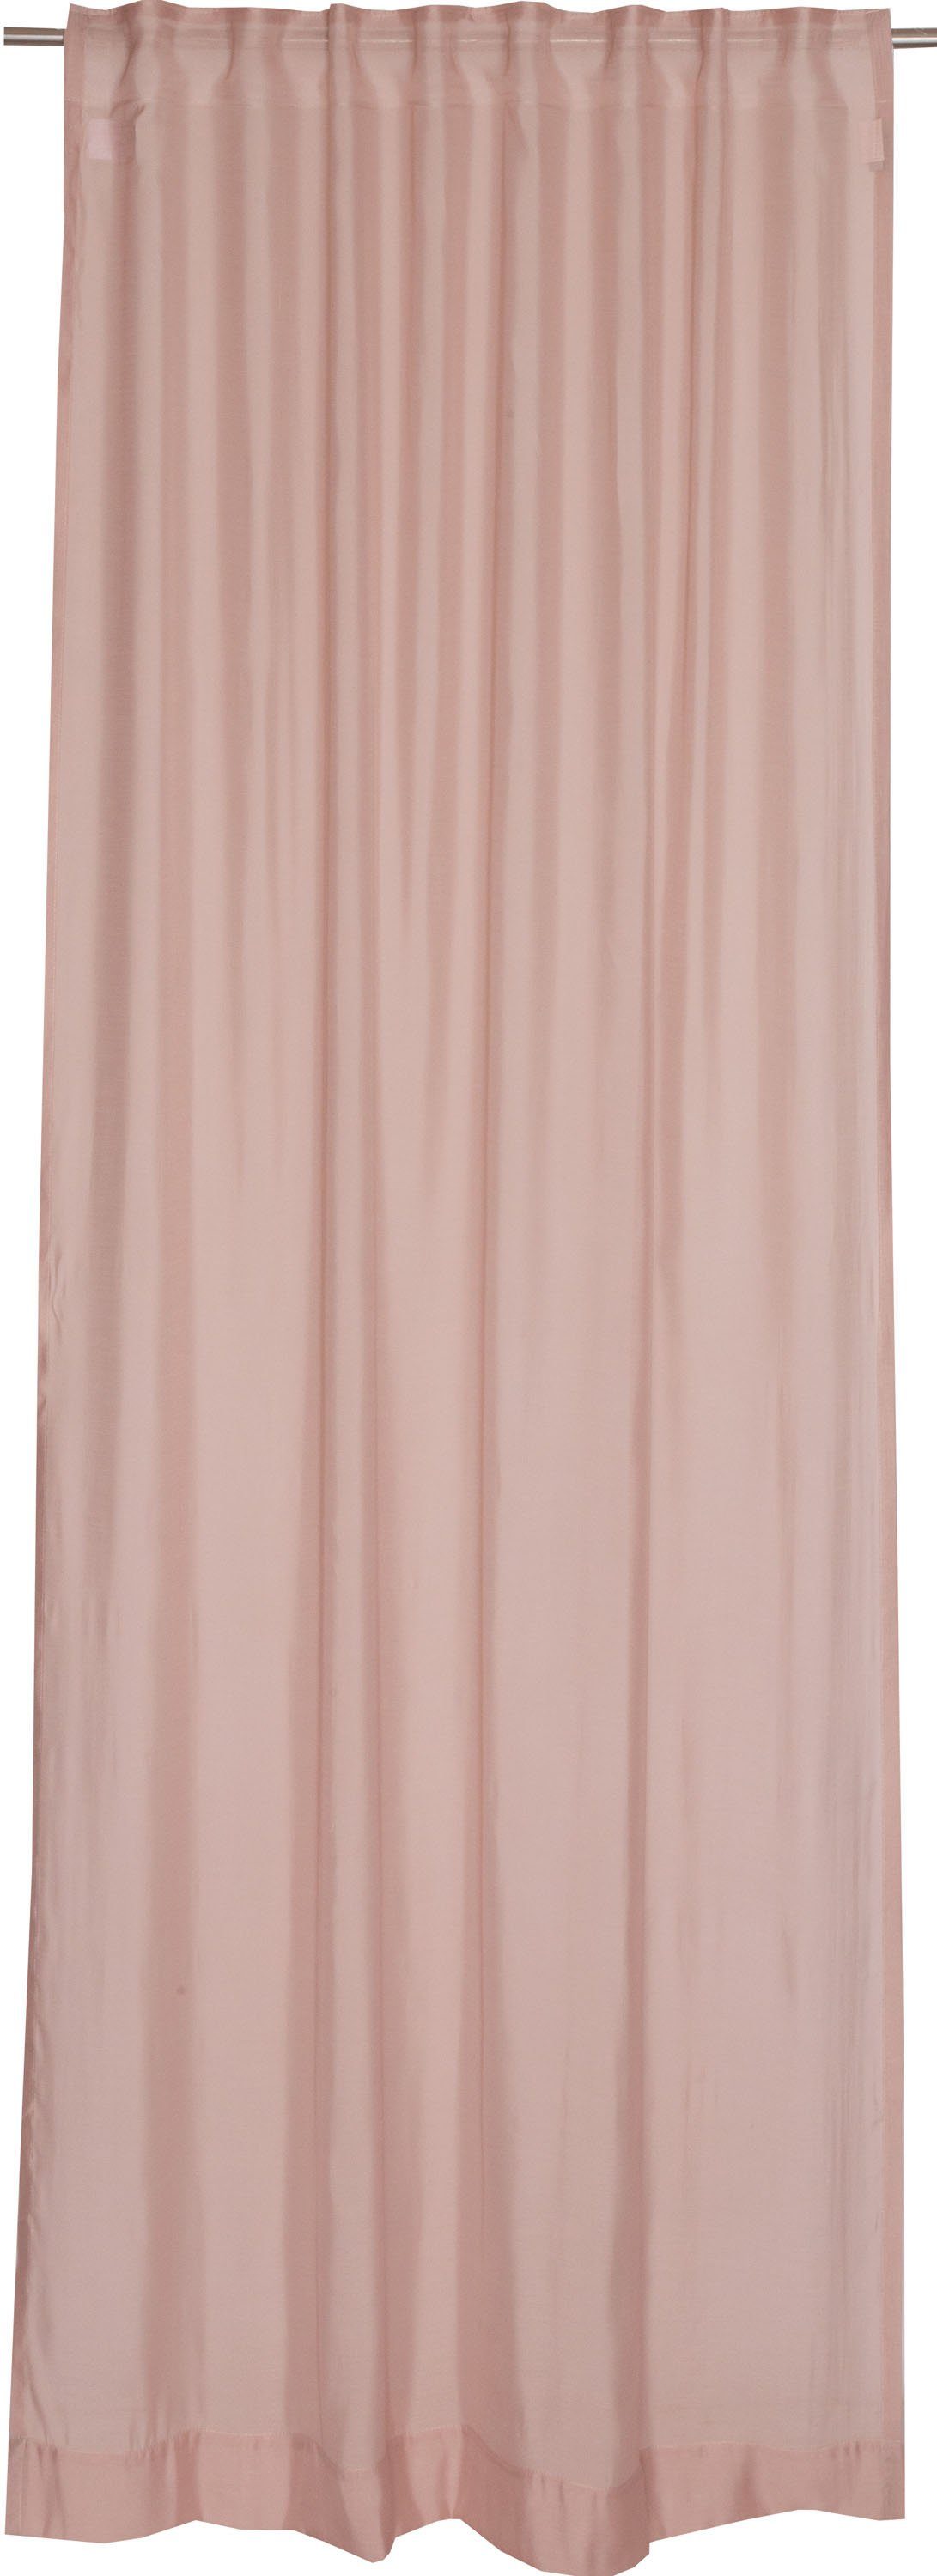 Vorhang Solid, SCHÖNER WOHNEN-Kollektion, Multifunktionsband (1 St), halbtransparent, Jacquard, im zeilosen, unifarbenen Look rosa/rosé | Fertiggardinen